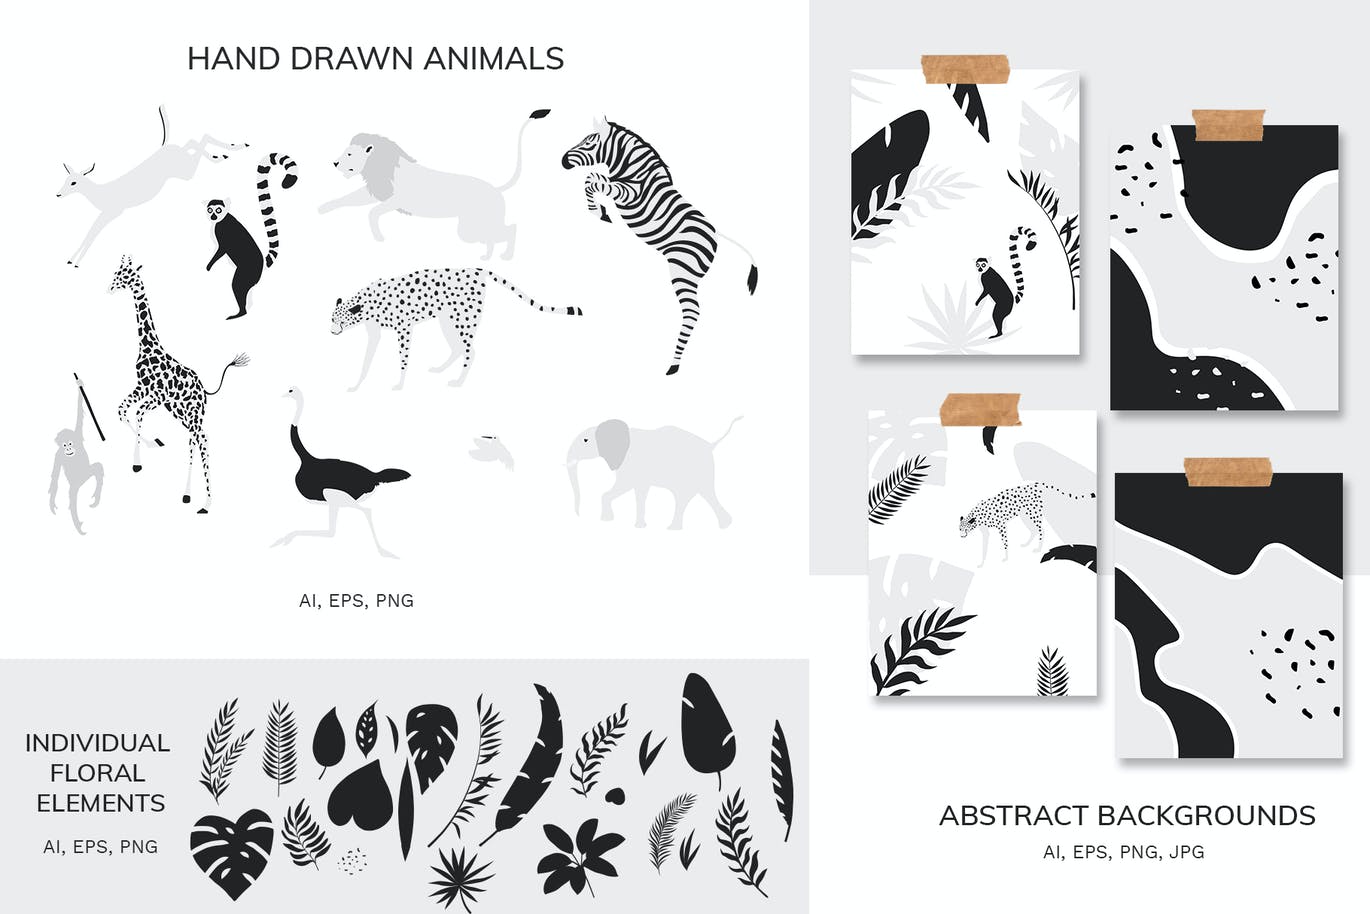 热带图案和动物剪贴画 Tropical patterns & animals clipart 图片素材 第6张